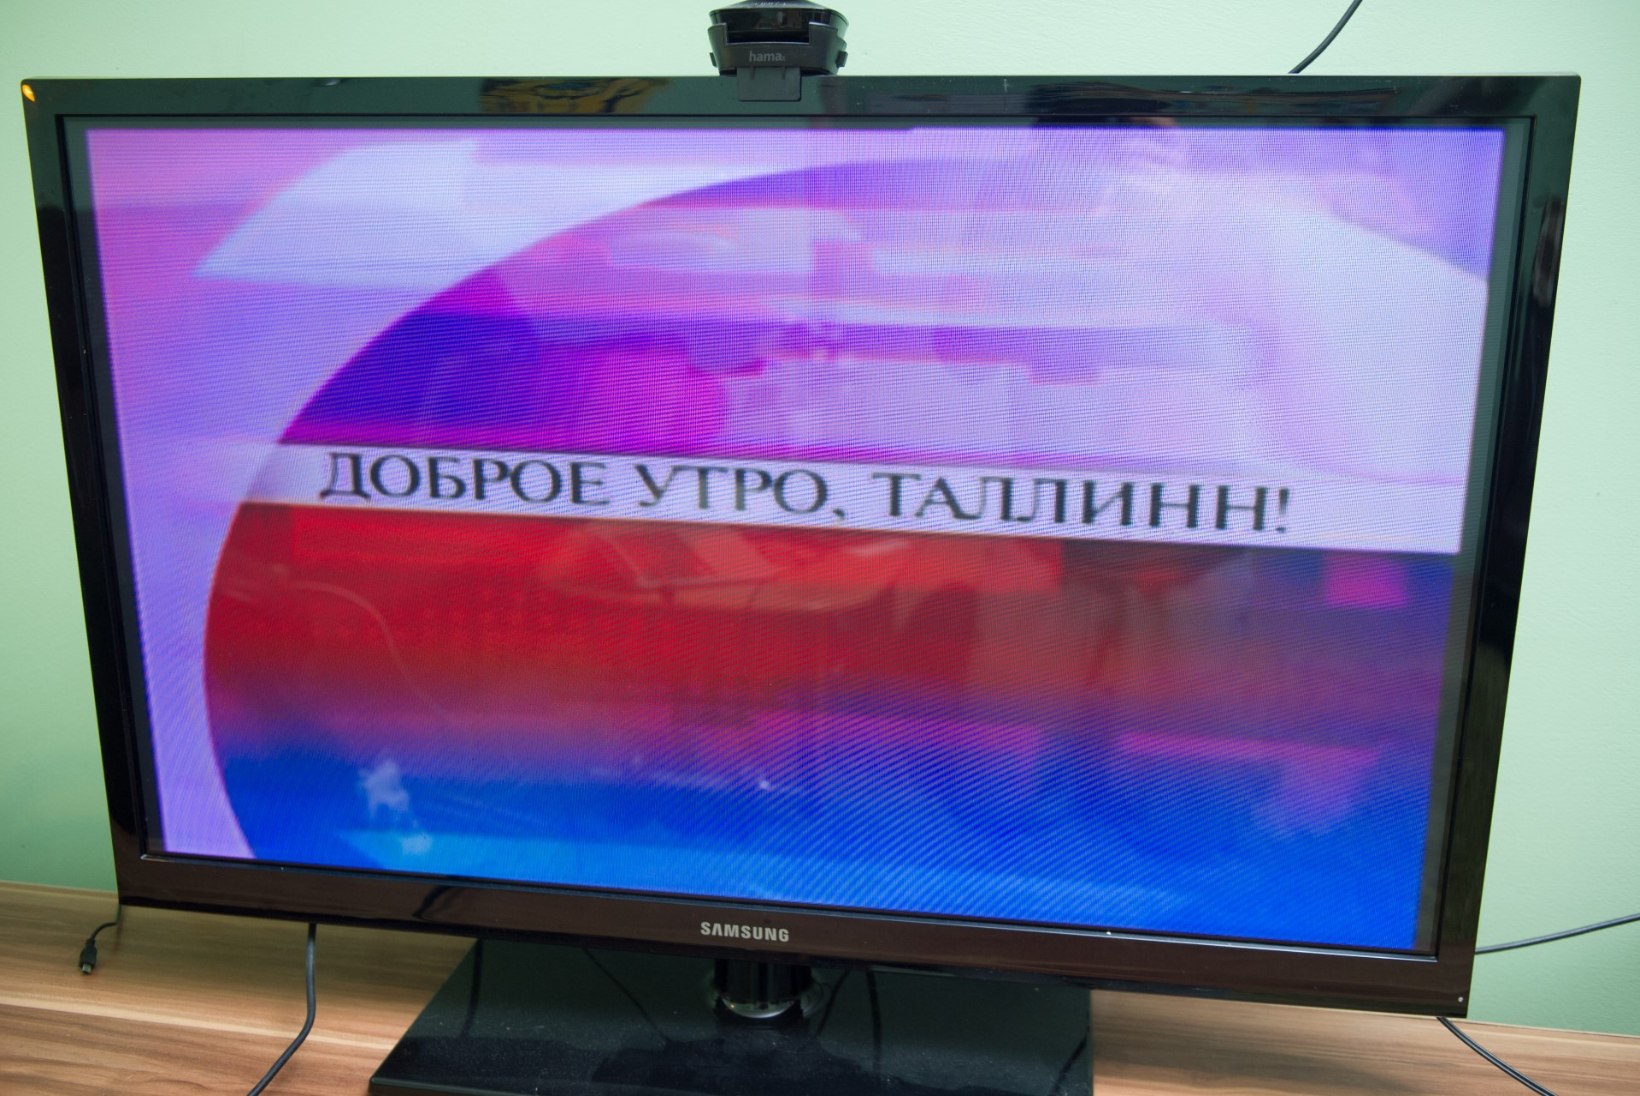 PBK eetris hakkab eriolukorra ajal olema venekeelne telesaade „Tallinna uudised“